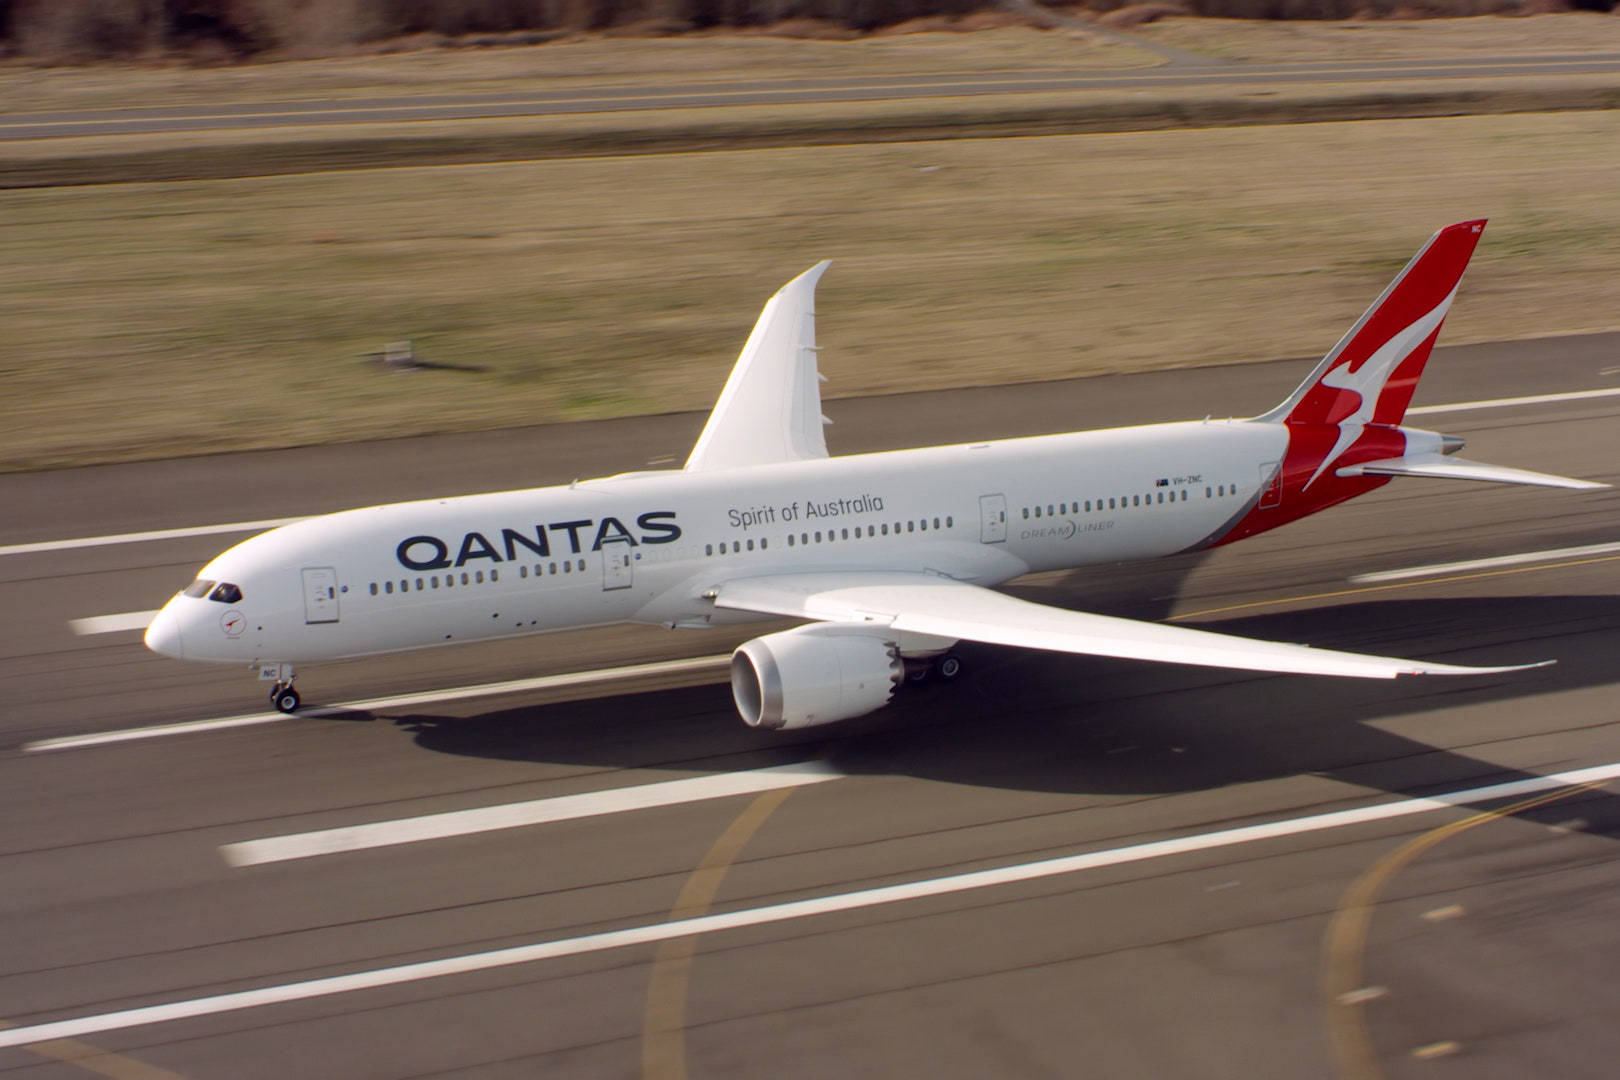 Qantas, The Spirit of Australia Aircraft in Mid-Flight Wallpaper